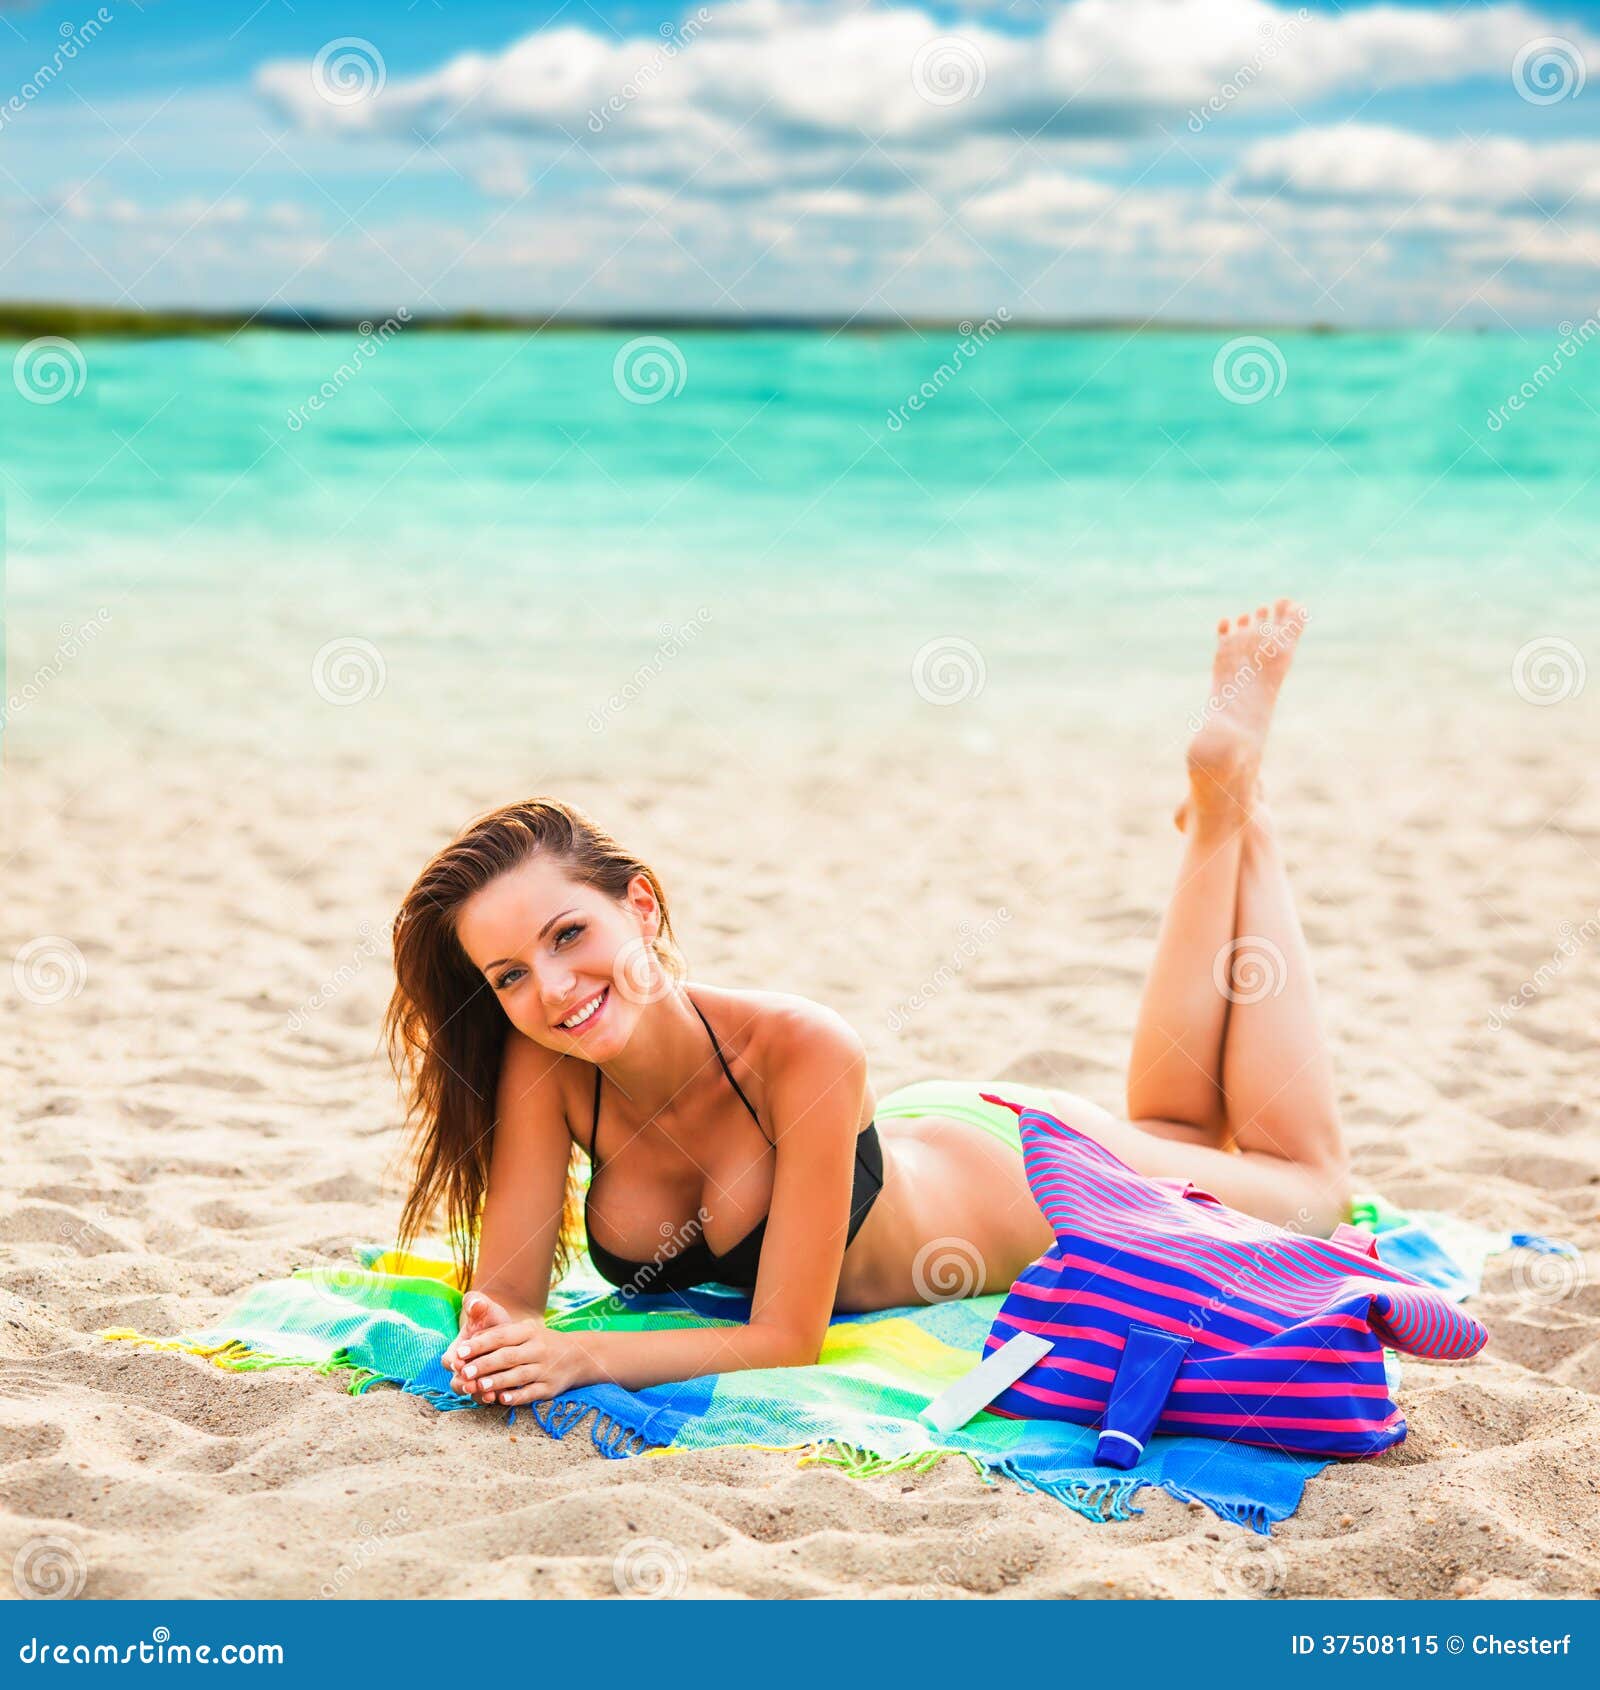 Beautiful Woman Laying on Beach Stock Image